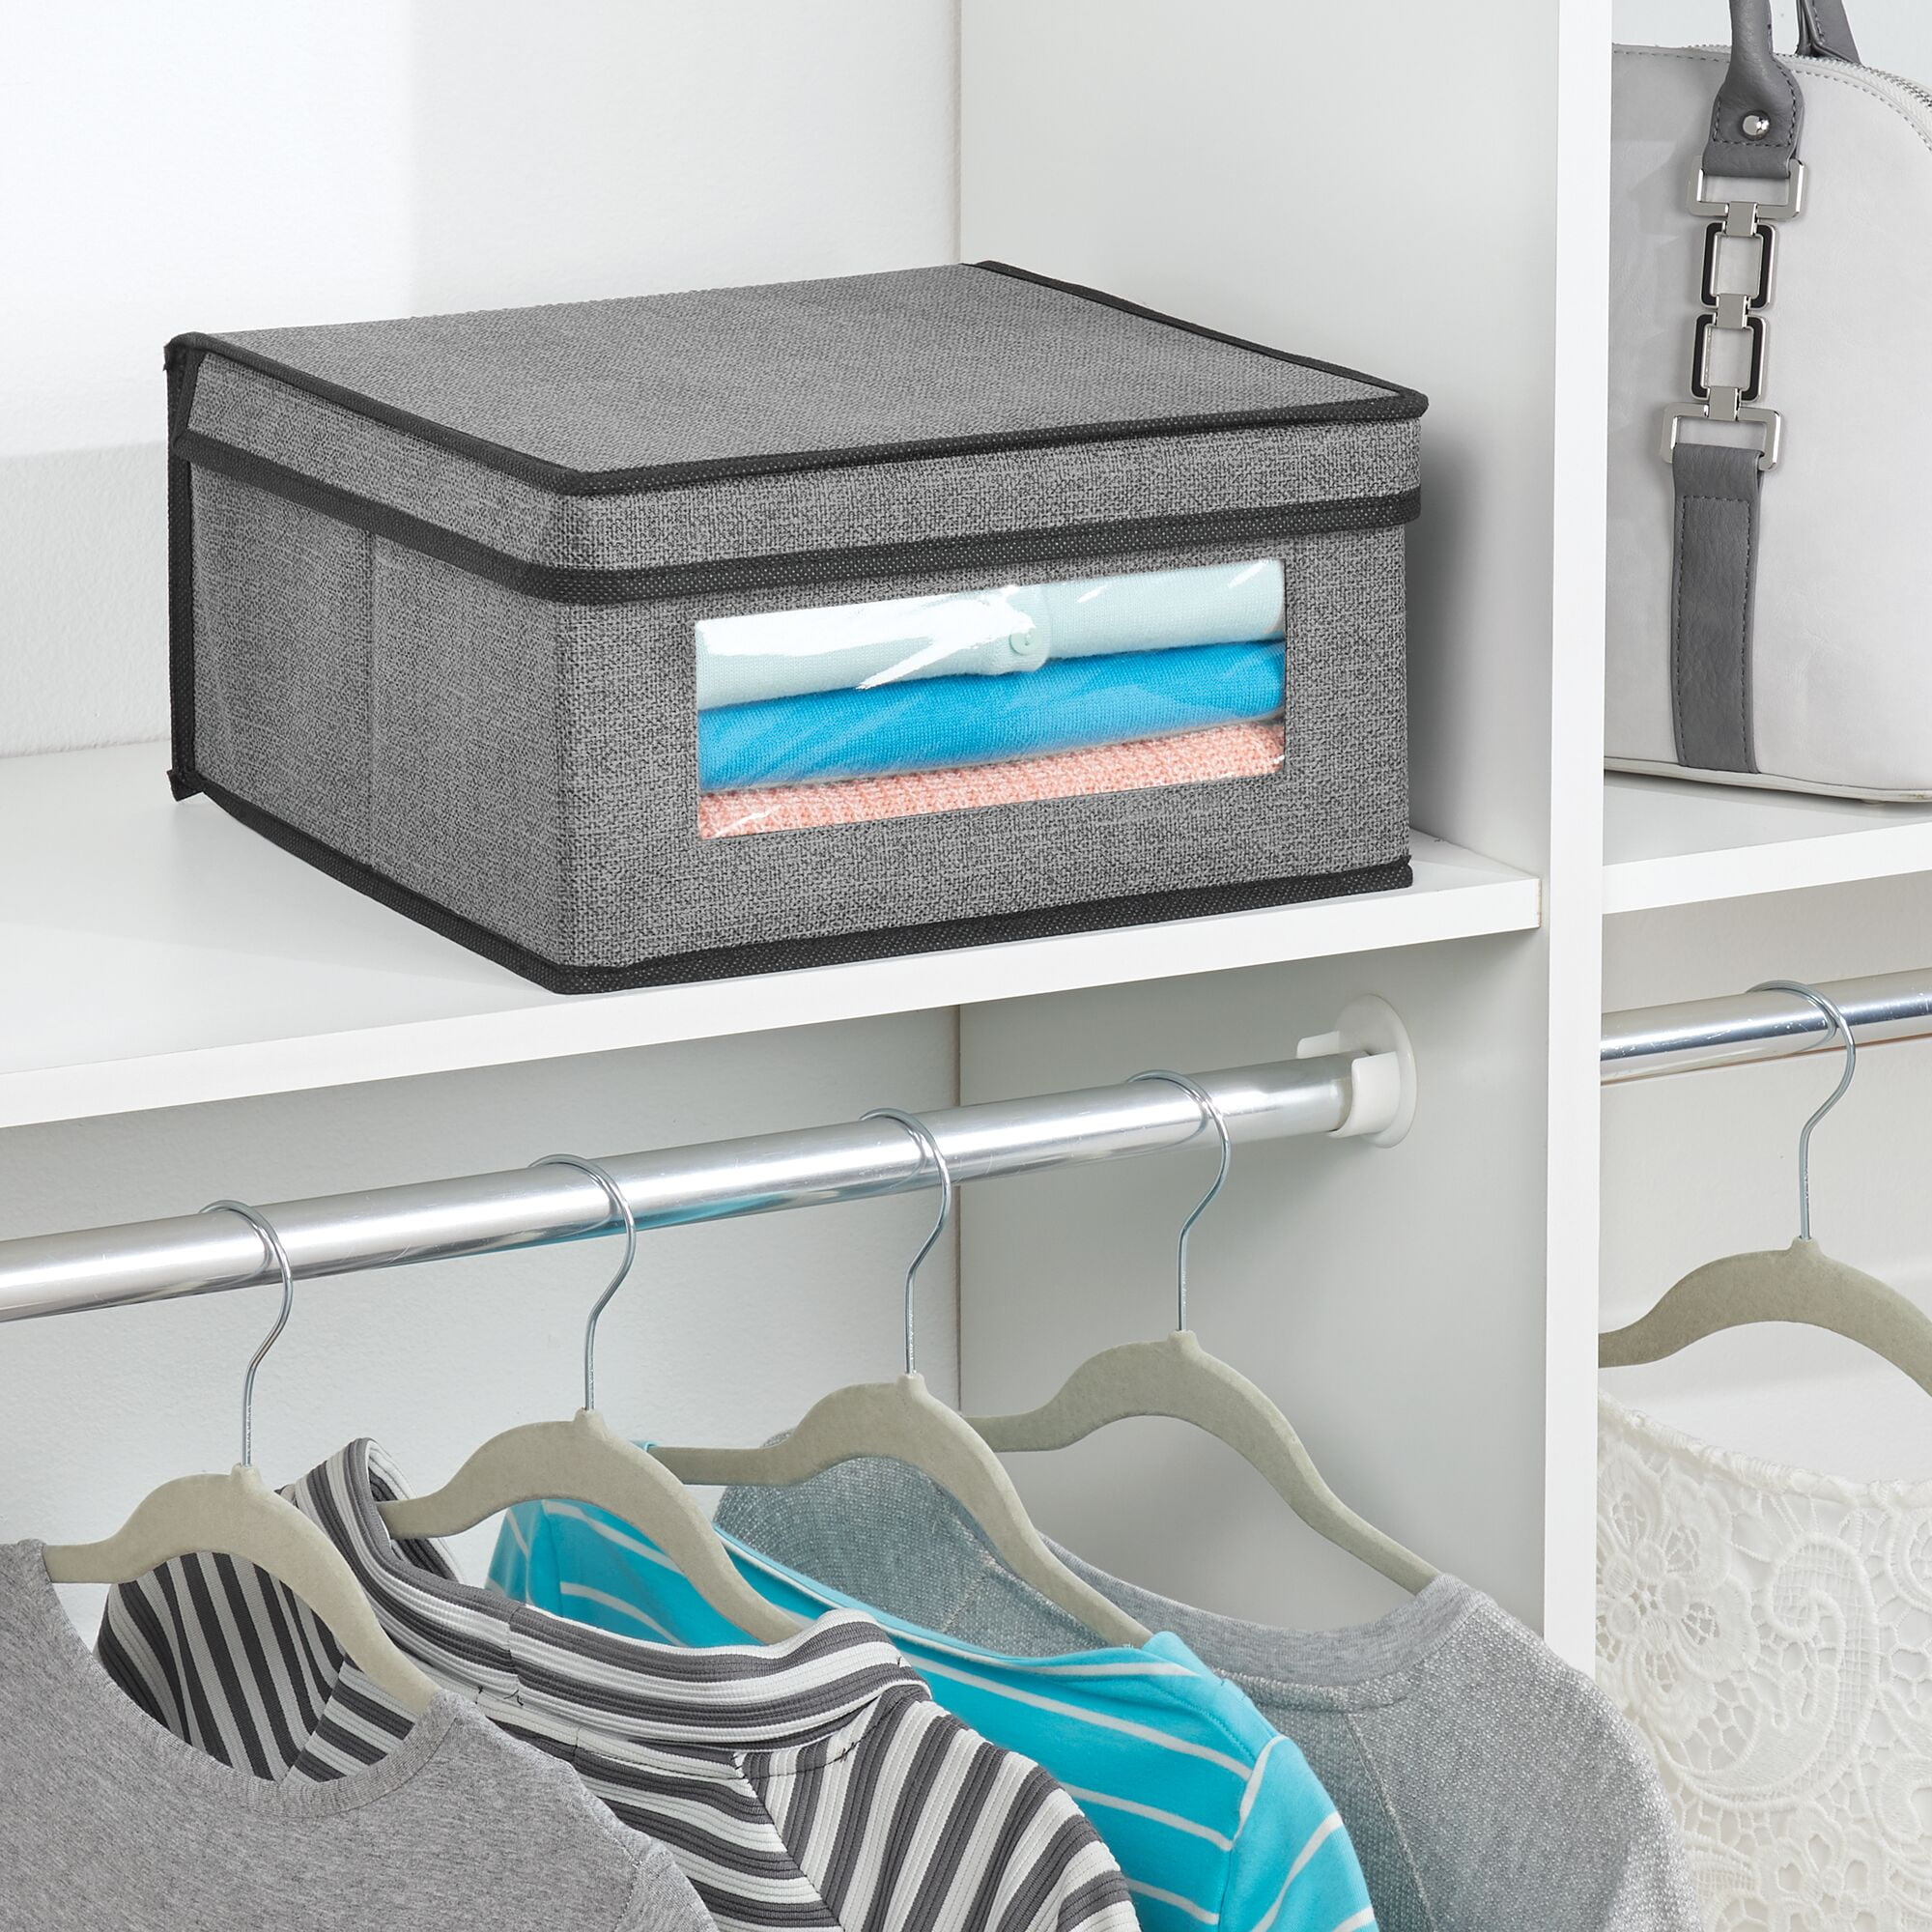 mDesign Fabric Bathroom Storage Bin, 15 x 6 x 8, 4 Pack - Charcoal